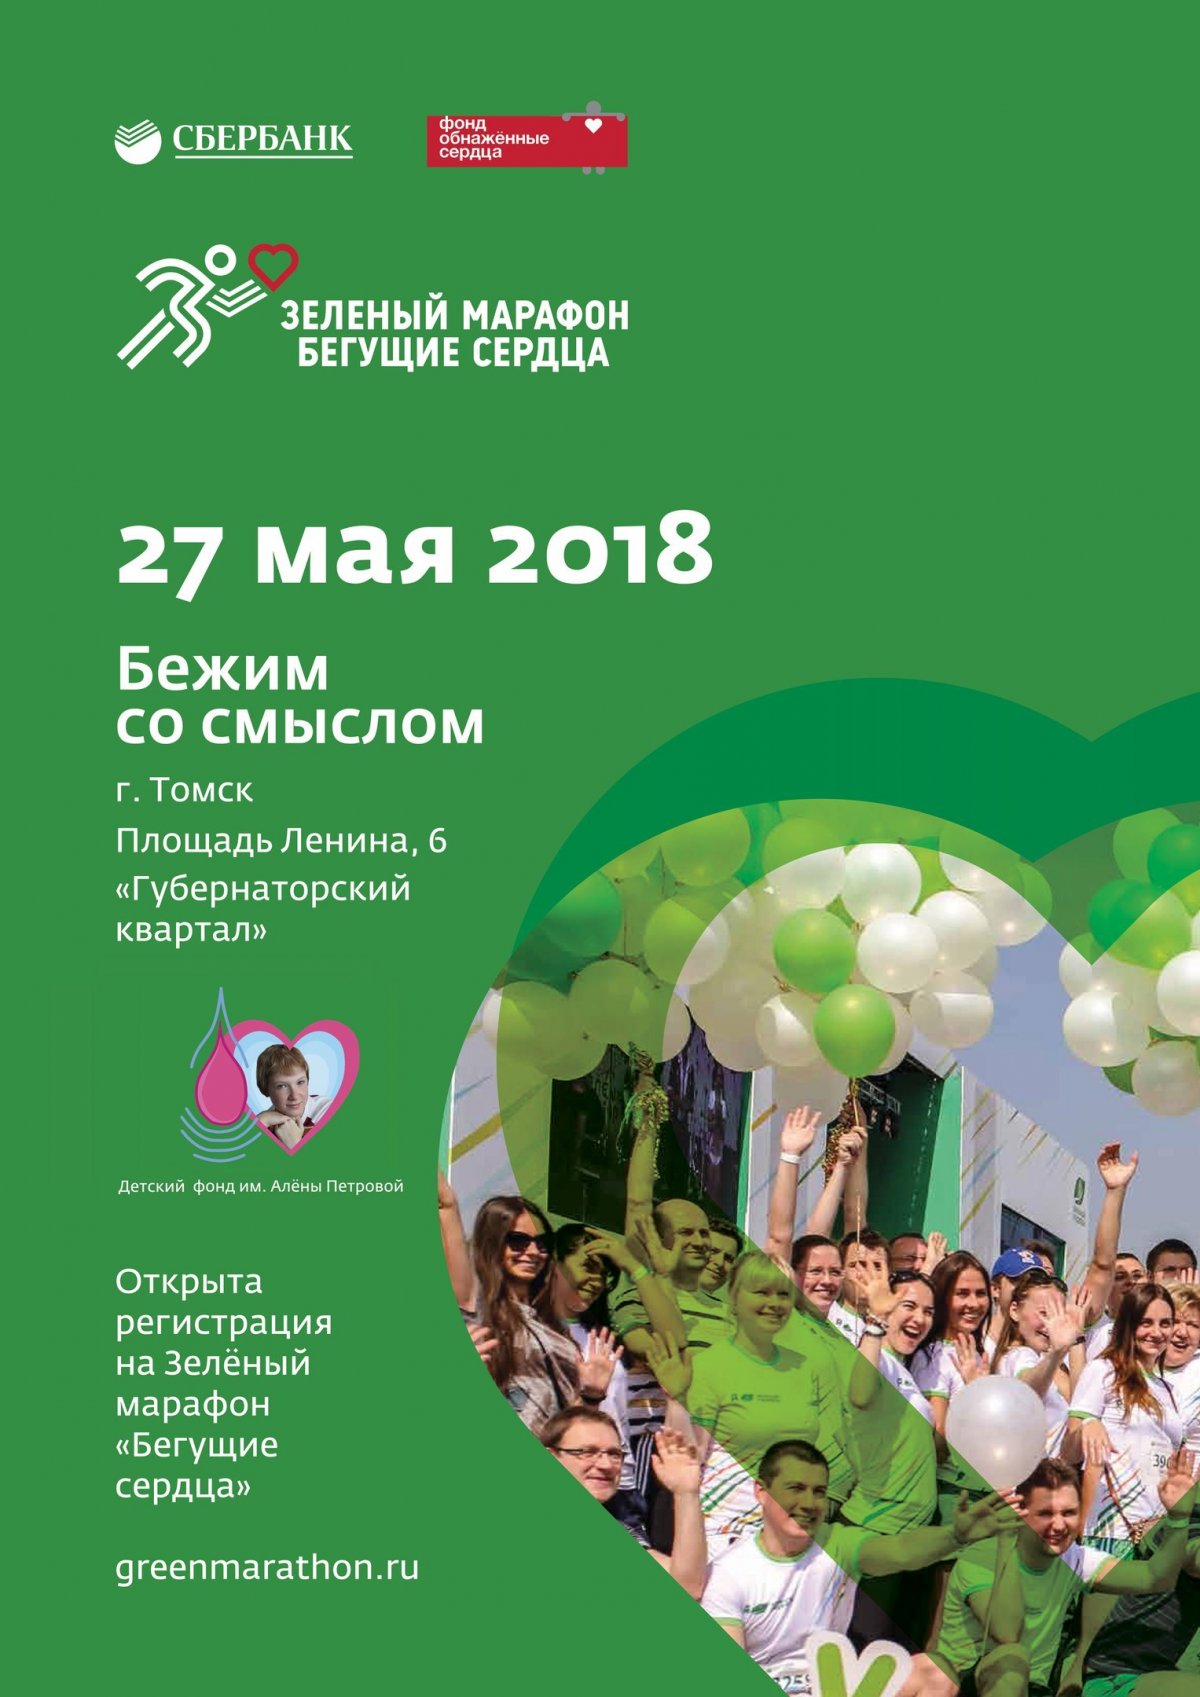 27 мая состоится акция «Зеленый марафон» от Сбербанка России и Фонда помощи детям «Обнаженные сердца». В забеге на дистанцию 4